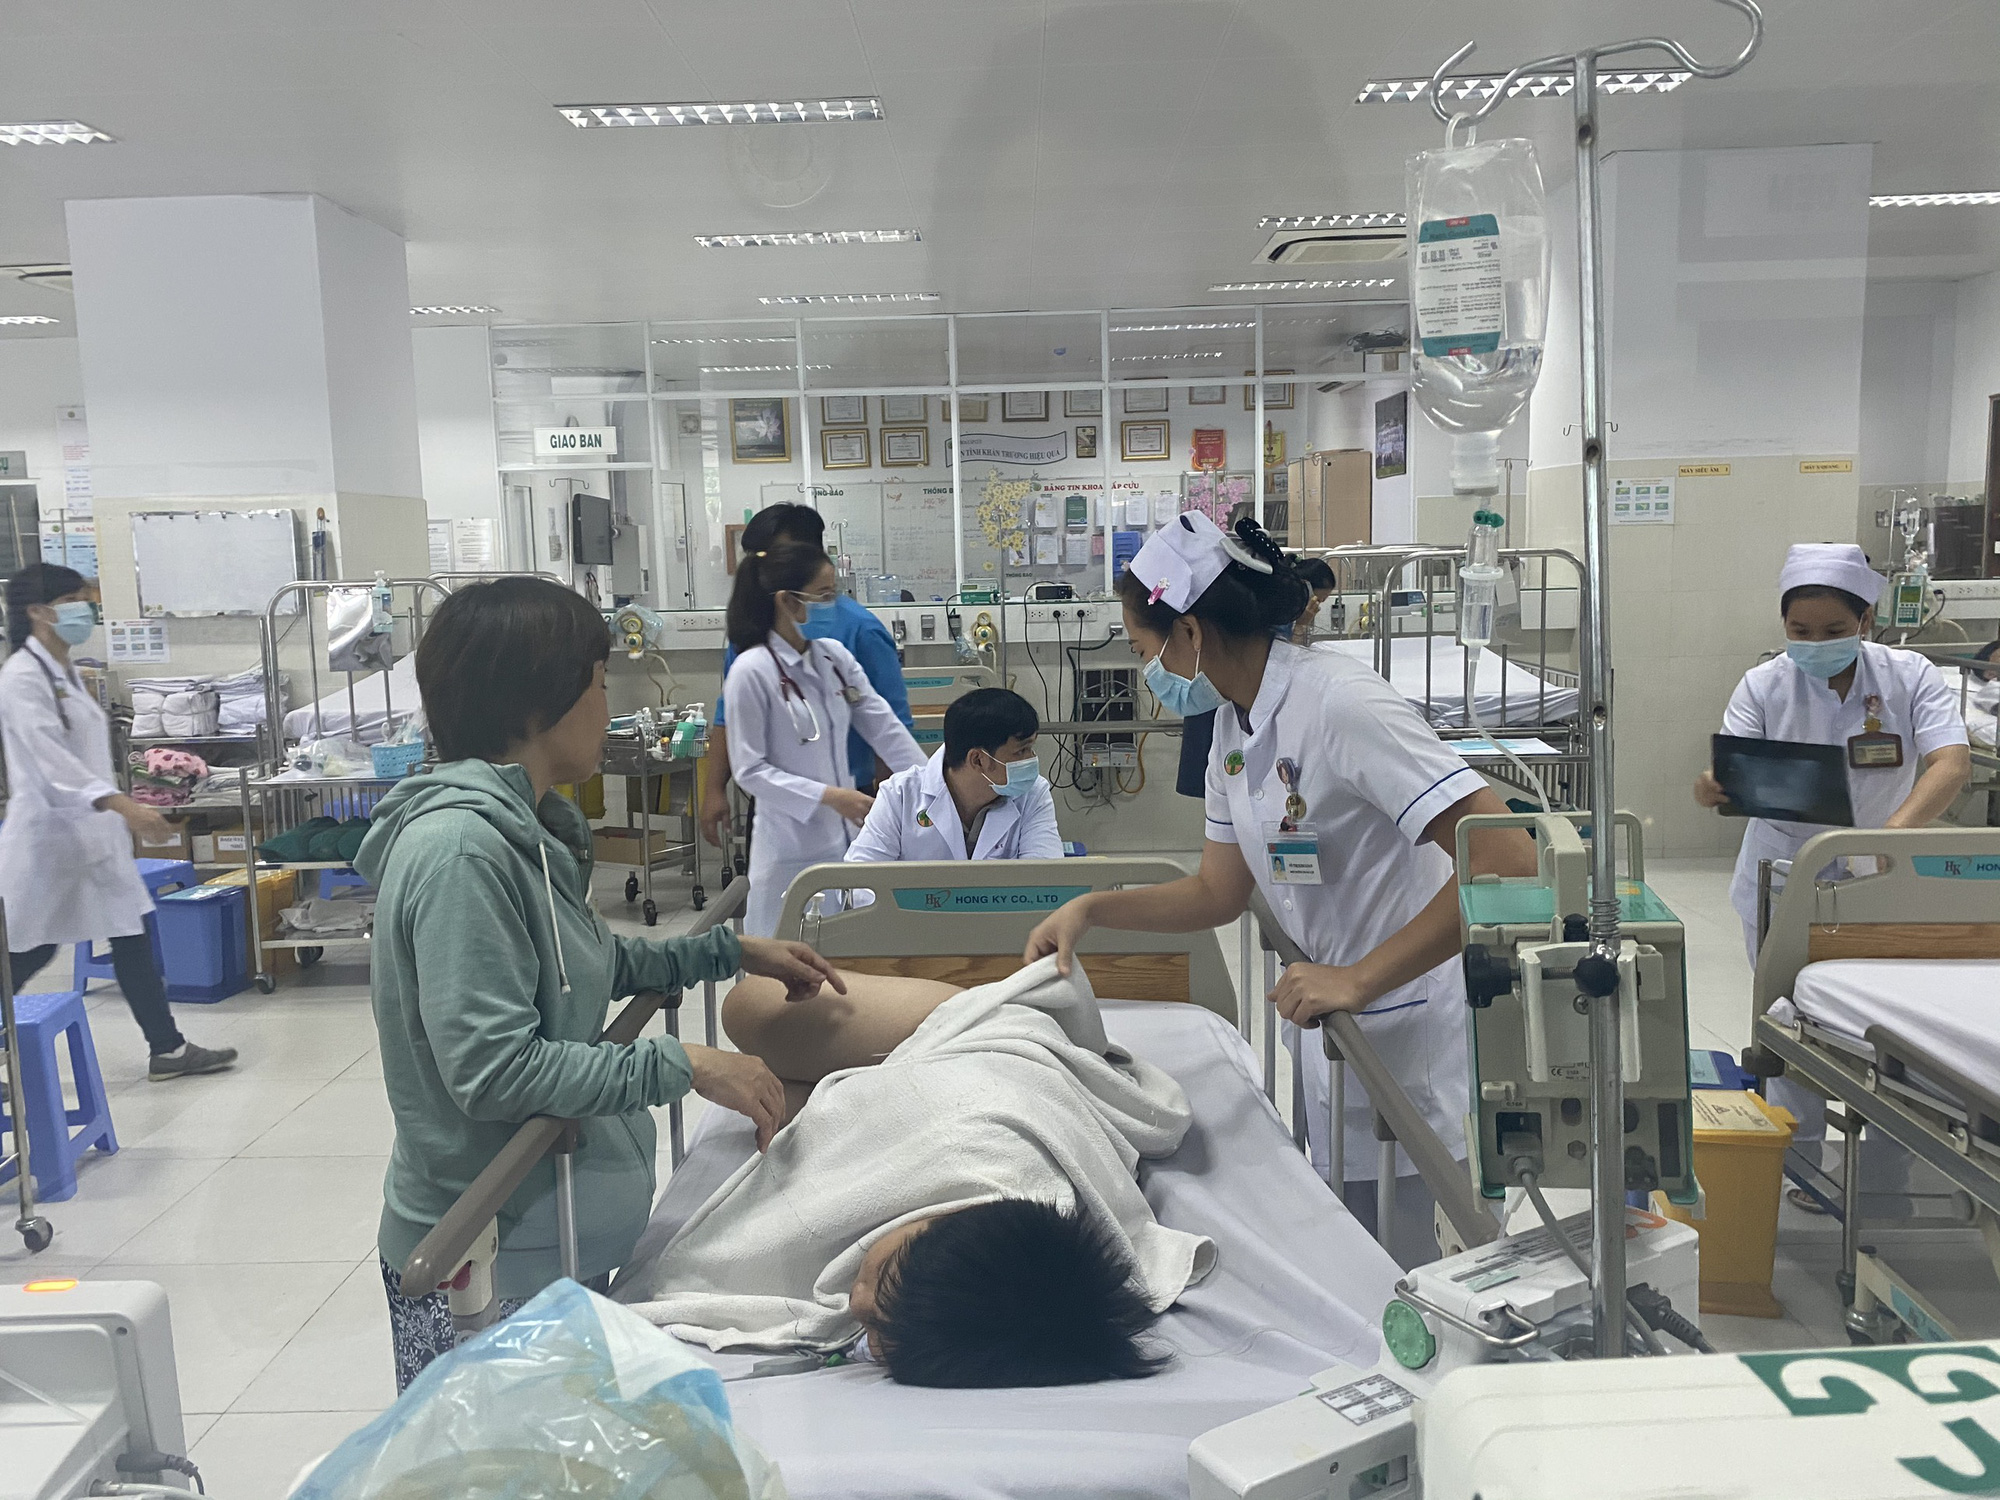 Danh tính 8 học sinh bị cây ngã đè phải cấp cứu tại BV Nhi Đồng 2: 4 trường hợp chấn thương nặng - Ảnh 8.